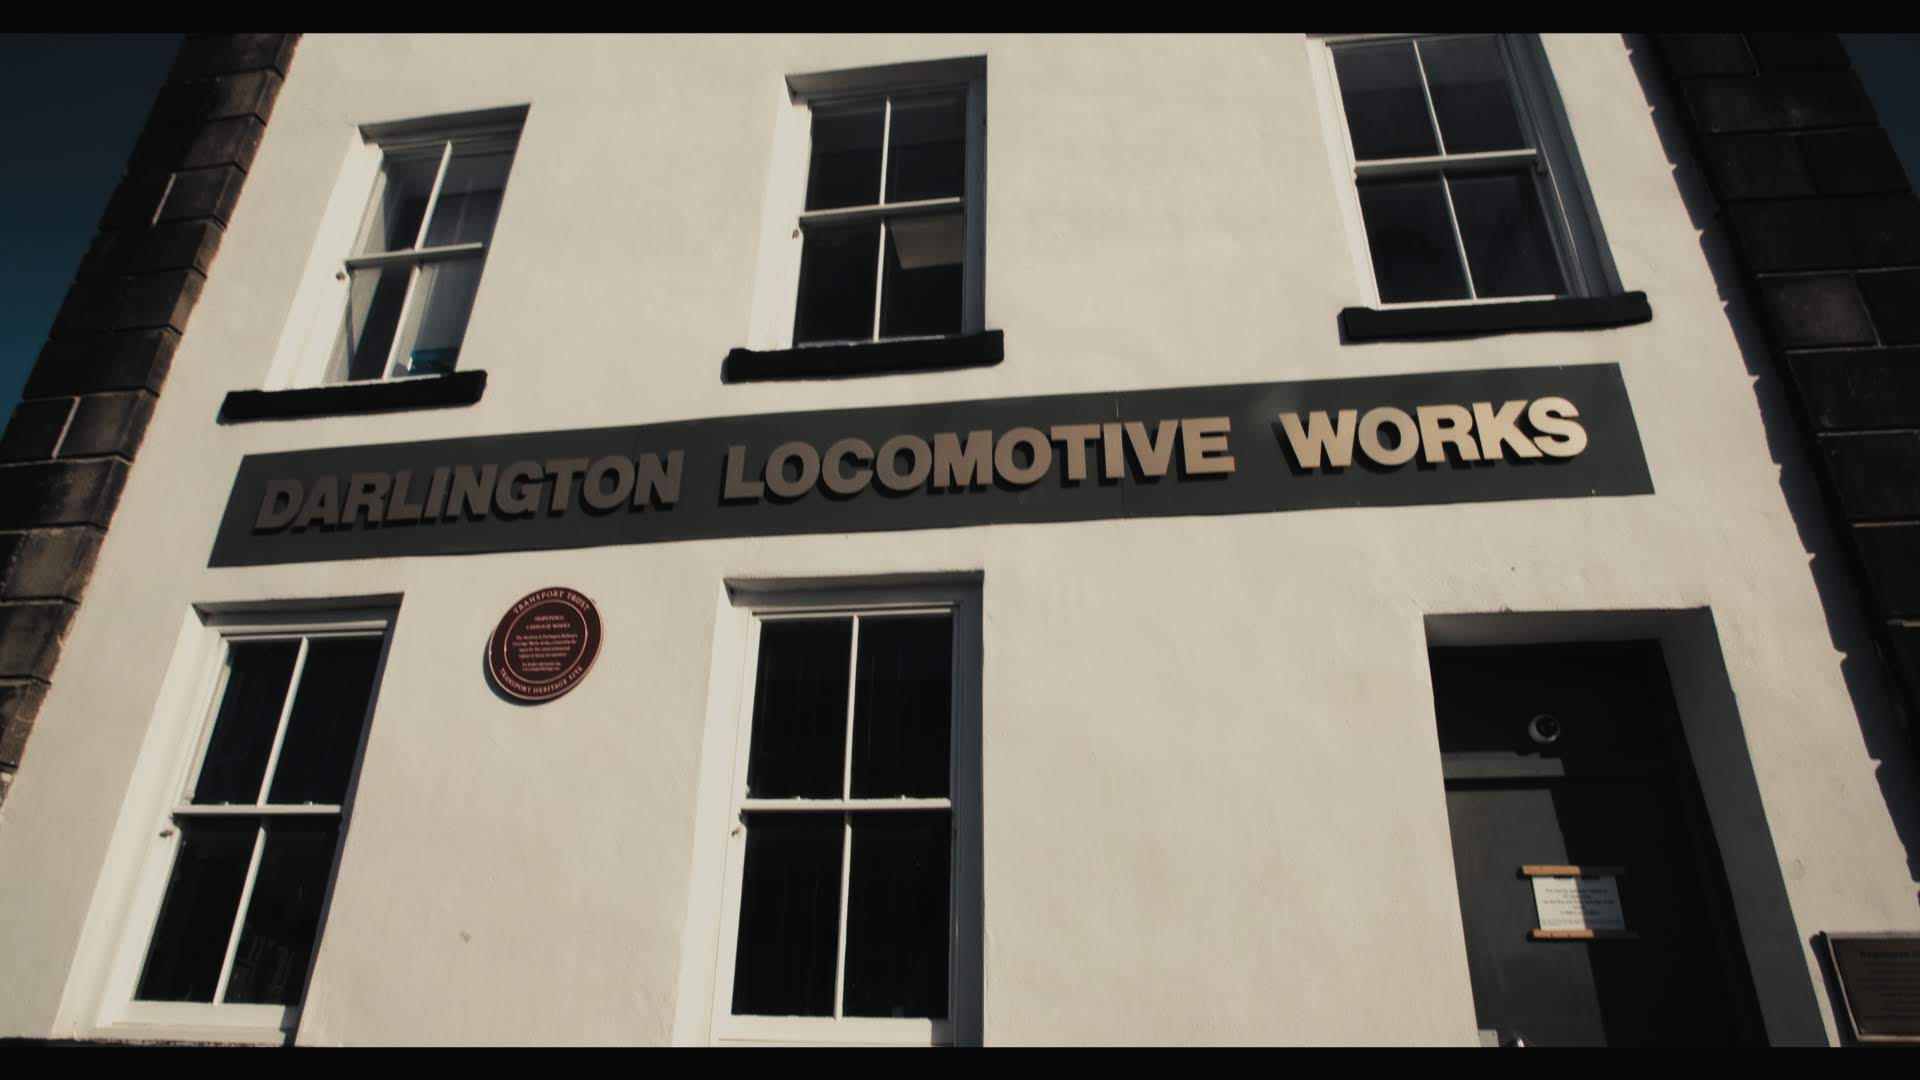 Darlington Locomotive Works